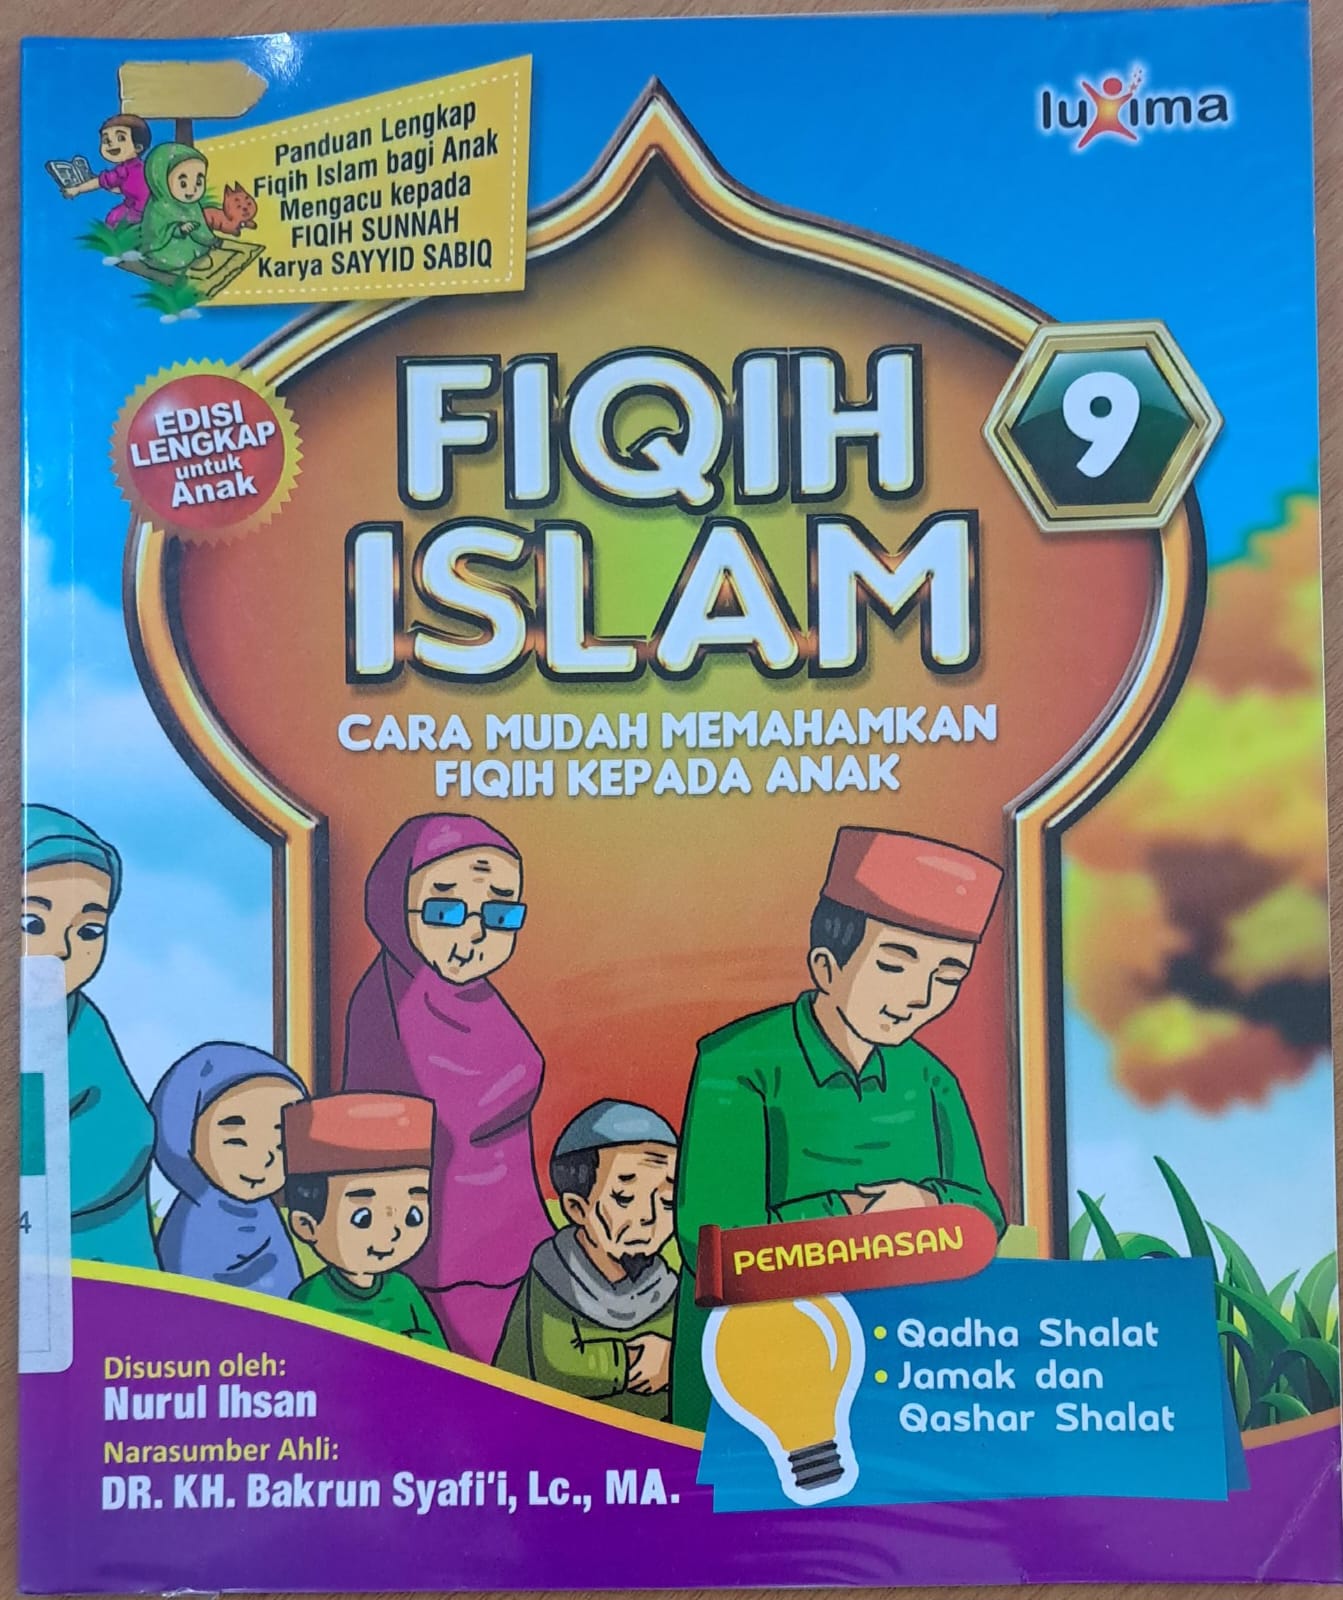 Fiqih islam jilid 9 :  Cara mudah memahamkan fiqih kepada anak